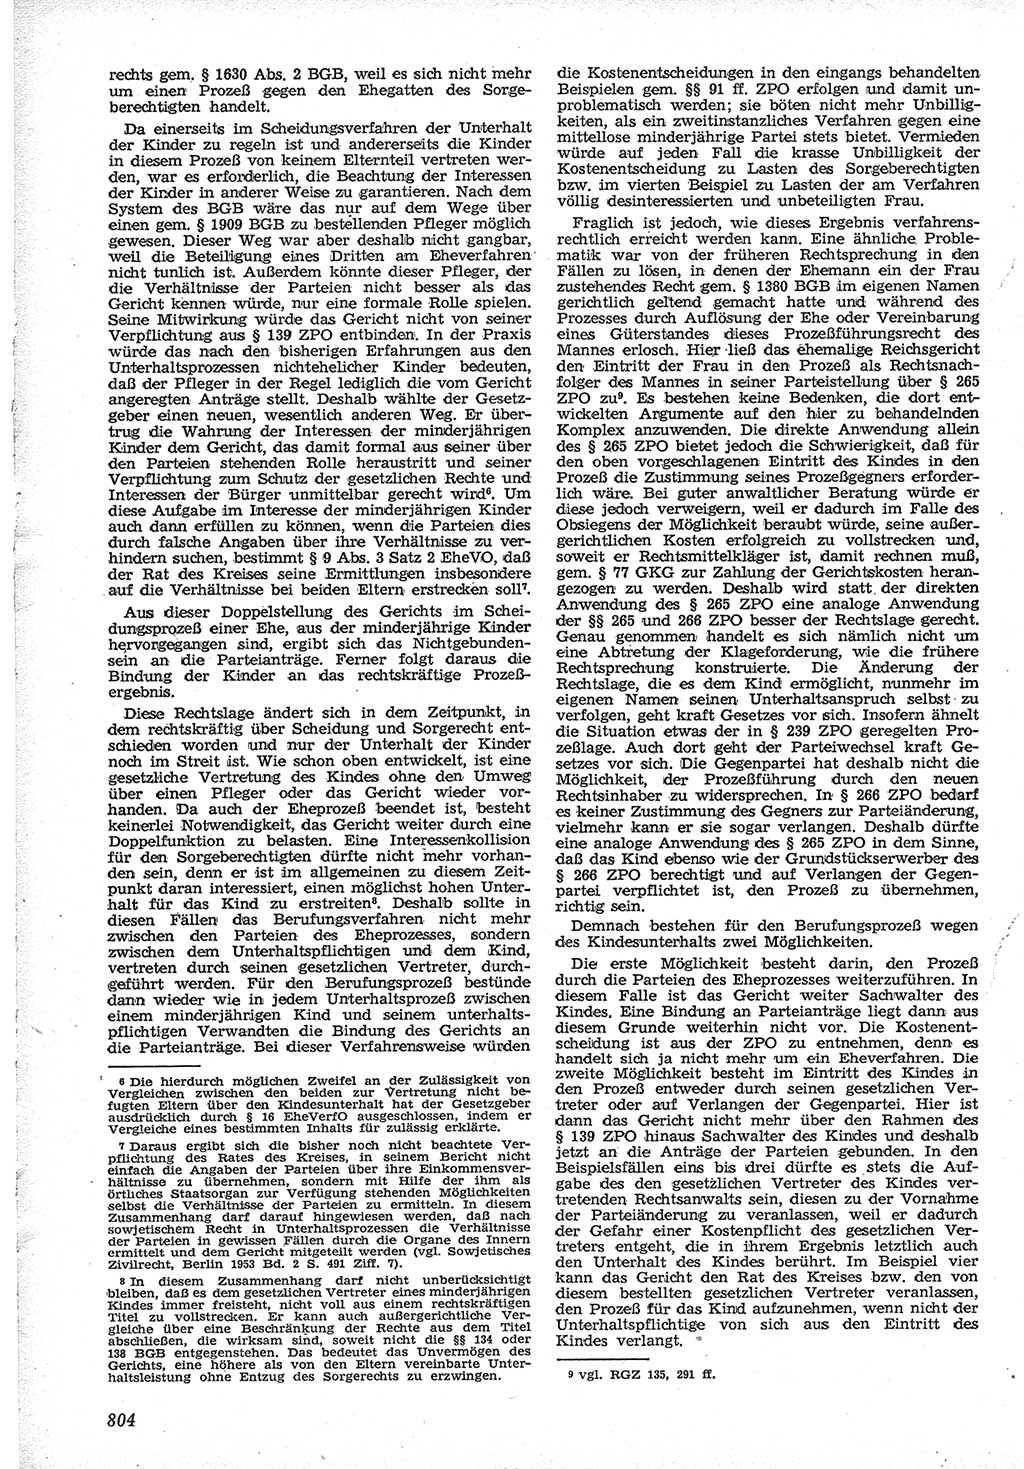 Neue Justiz (NJ), Zeitschrift für Recht und Rechtswissenschaft [Deutsche Demokratische Republik (DDR)], 12. Jahrgang 1958, Seite 804 (NJ DDR 1958, S. 804)